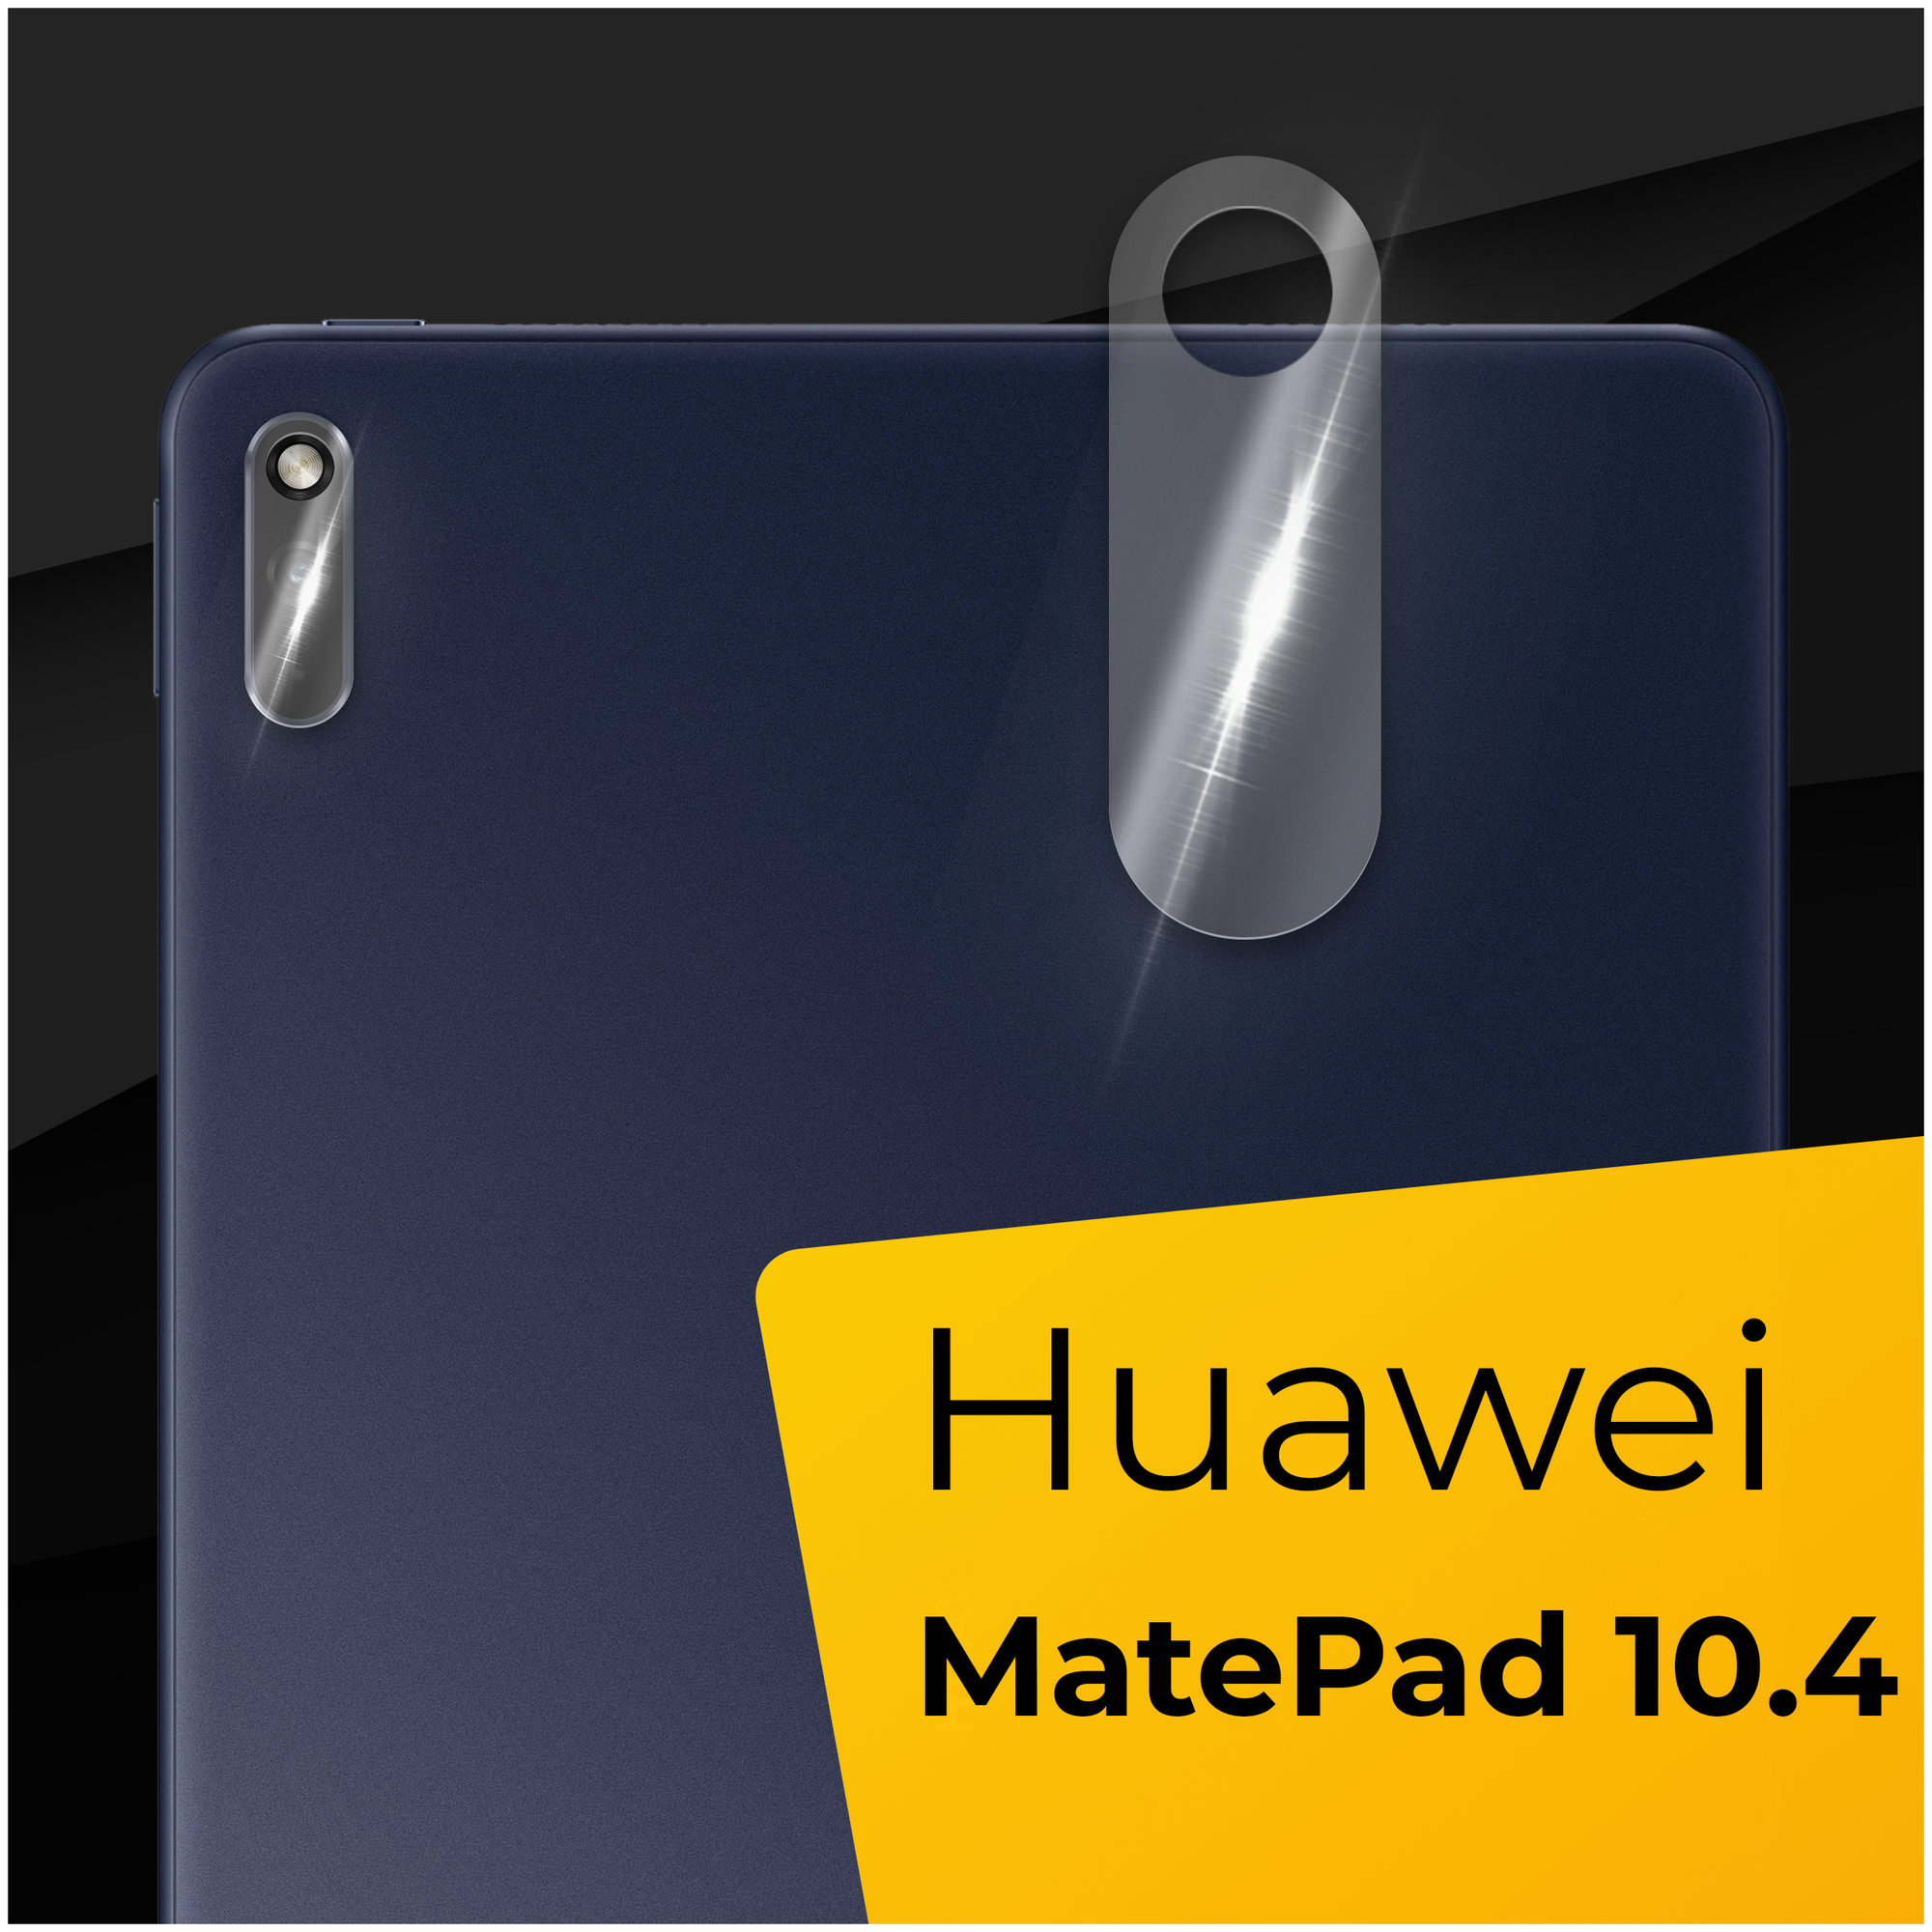 Противоударное защитное стекло для камеры планшета Huawei MatePad 10.4 / Тонкое прозрачное стекло на камеру Хуавей Мат Пад 10.4 / Защита задней камеры